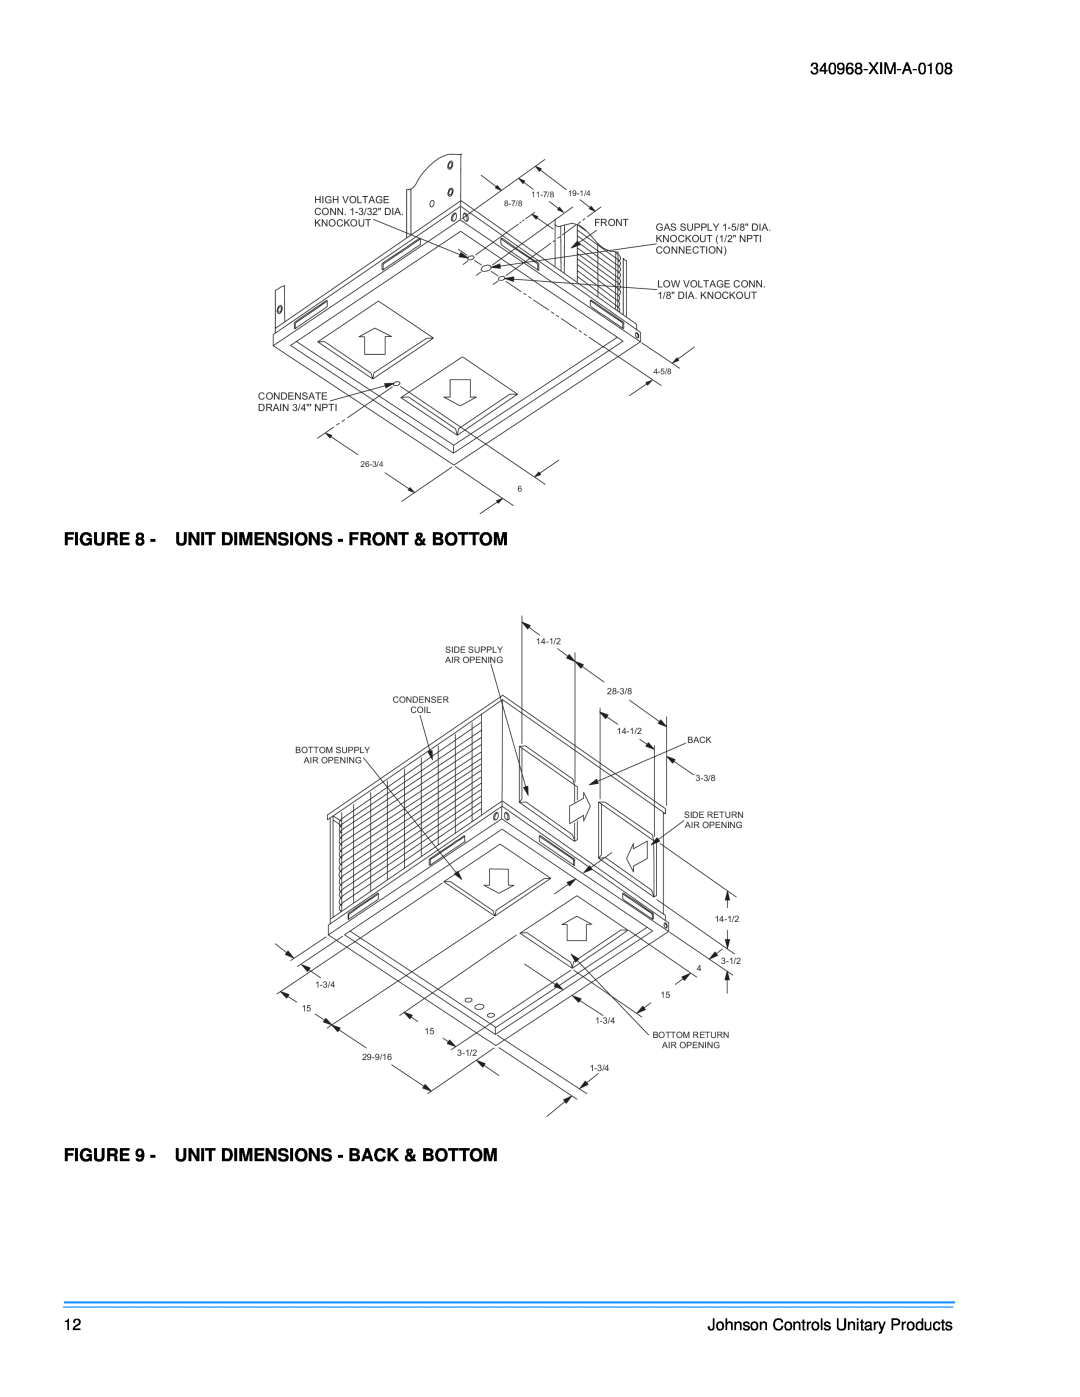 Johnson Controls 340968-XIM-A-0108 Unit Dimensions - Front & Bottom, Unit Dimensions - Back & Bottom, 29-9/16, 3-1/2 